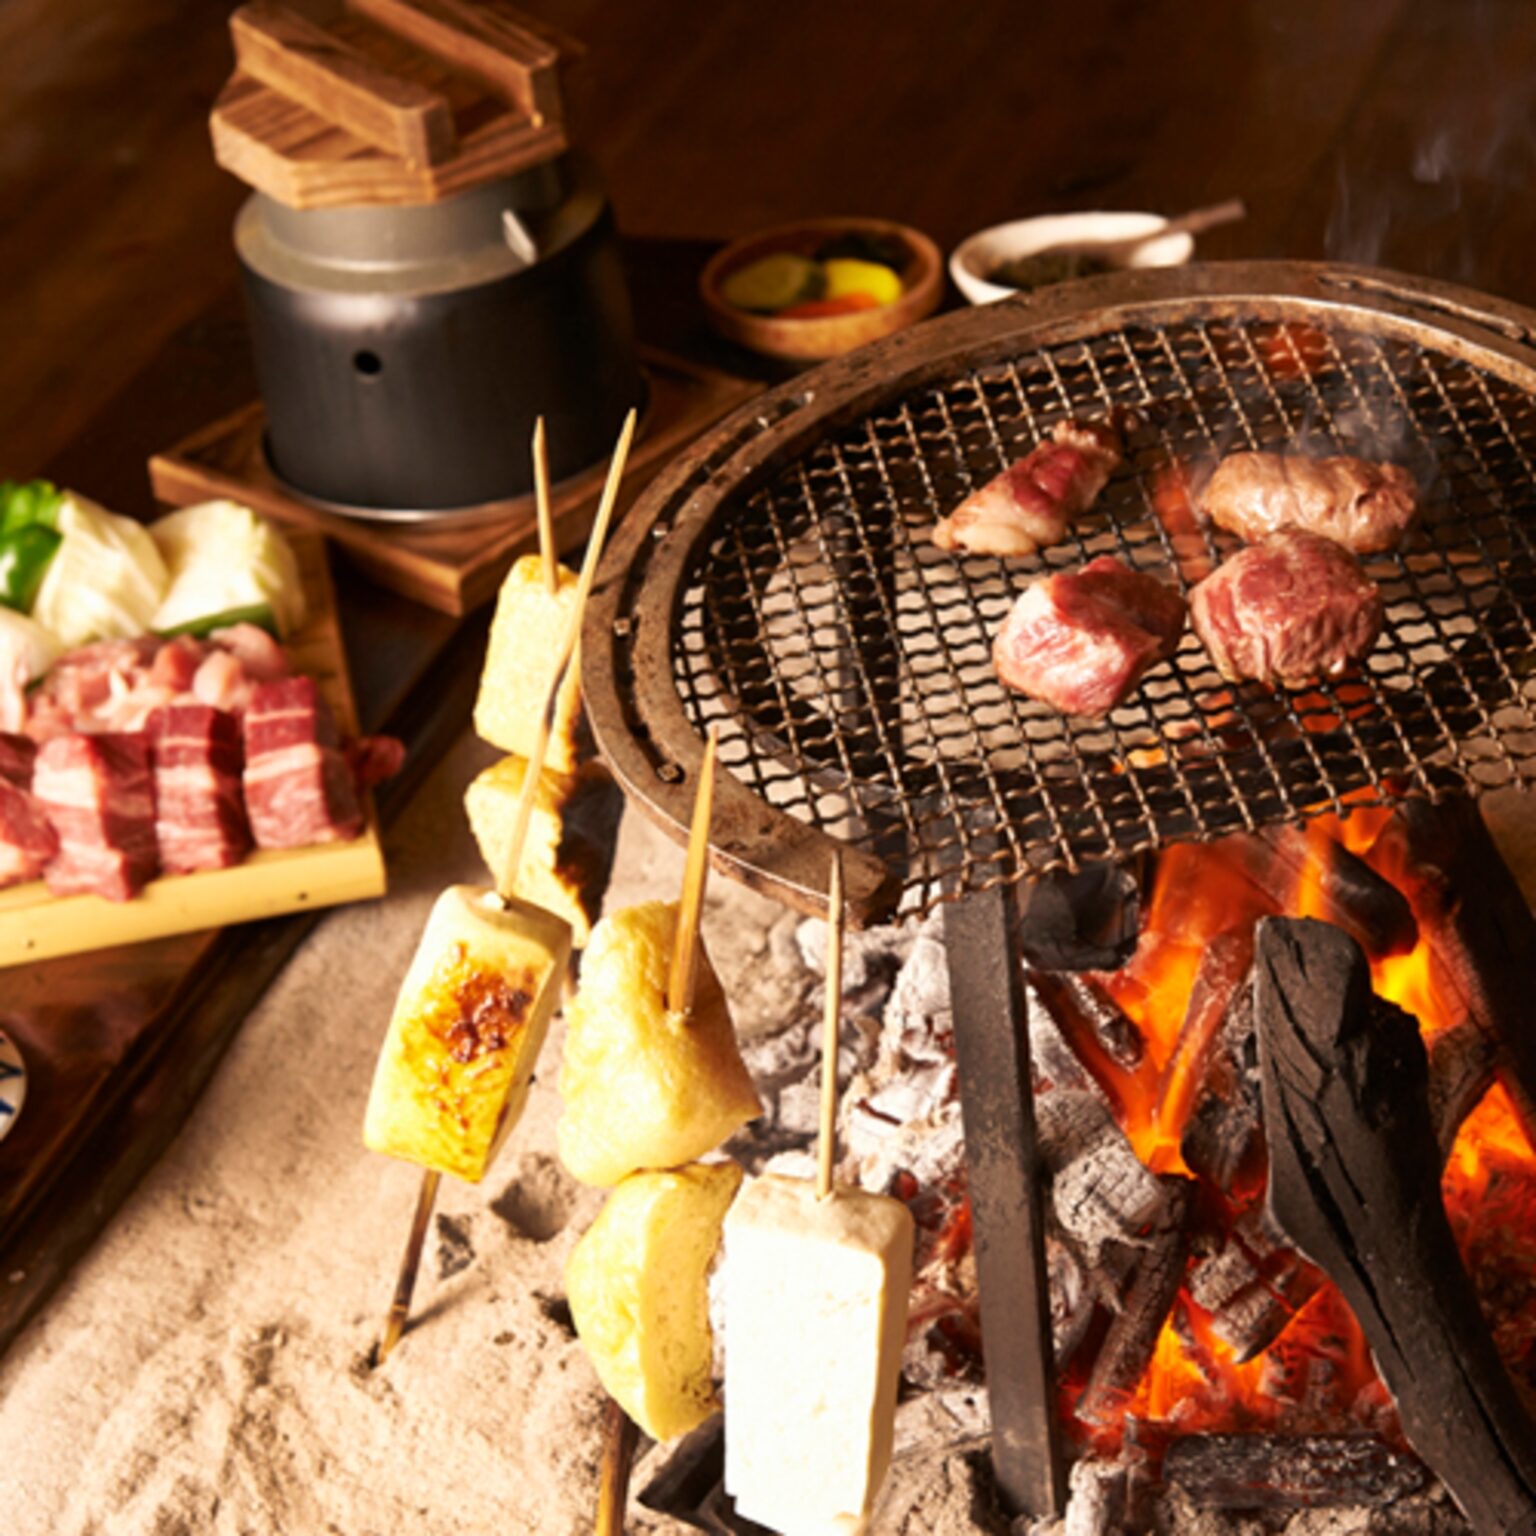 食事は、囲炉裏端で阿蘇の郷土料理・田楽や炭火焼きなどを味わう。